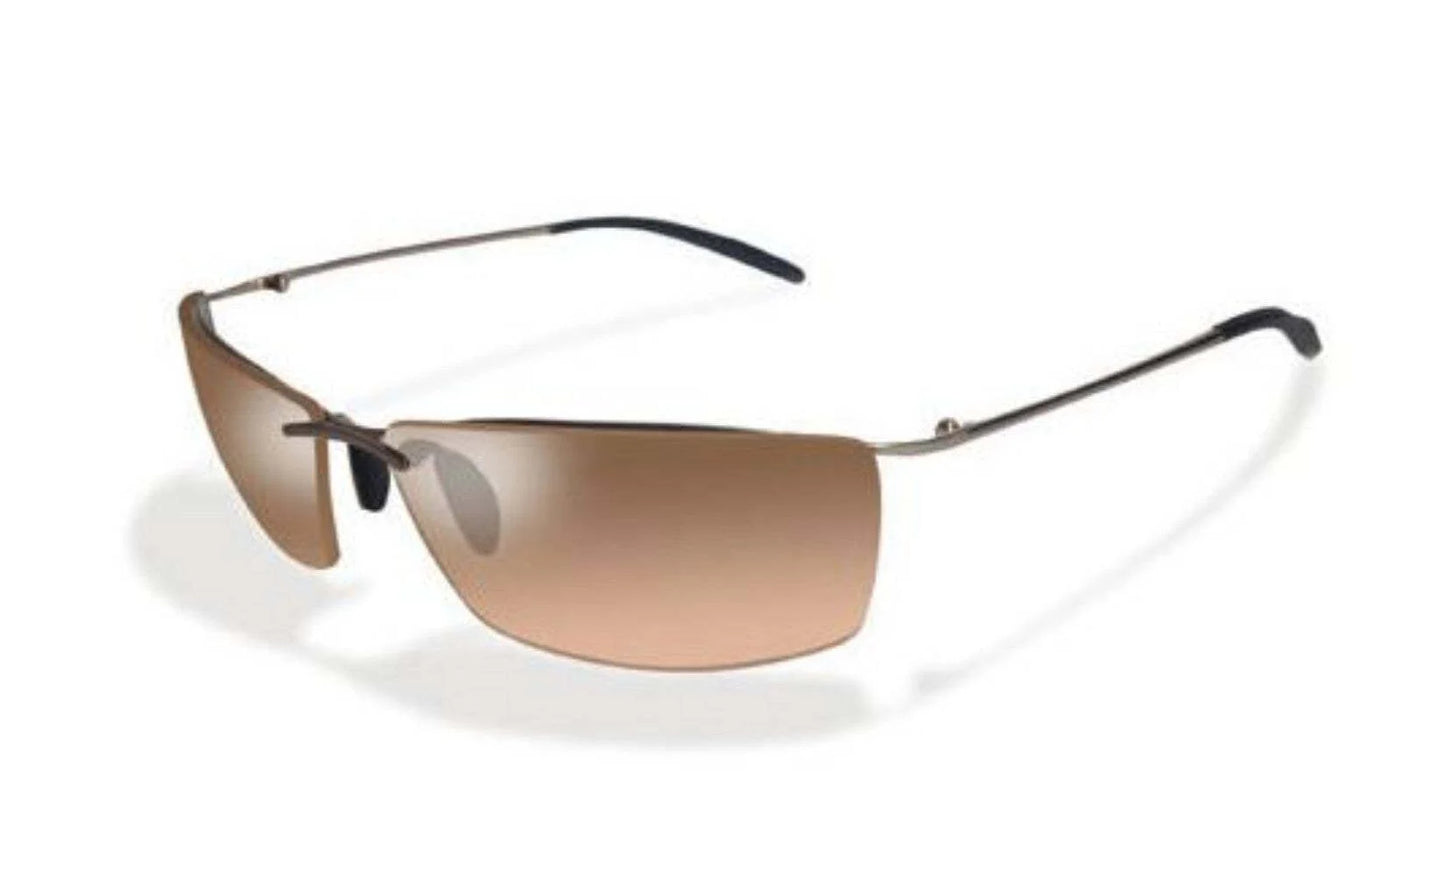 Wiley X FL1 Sunglasses